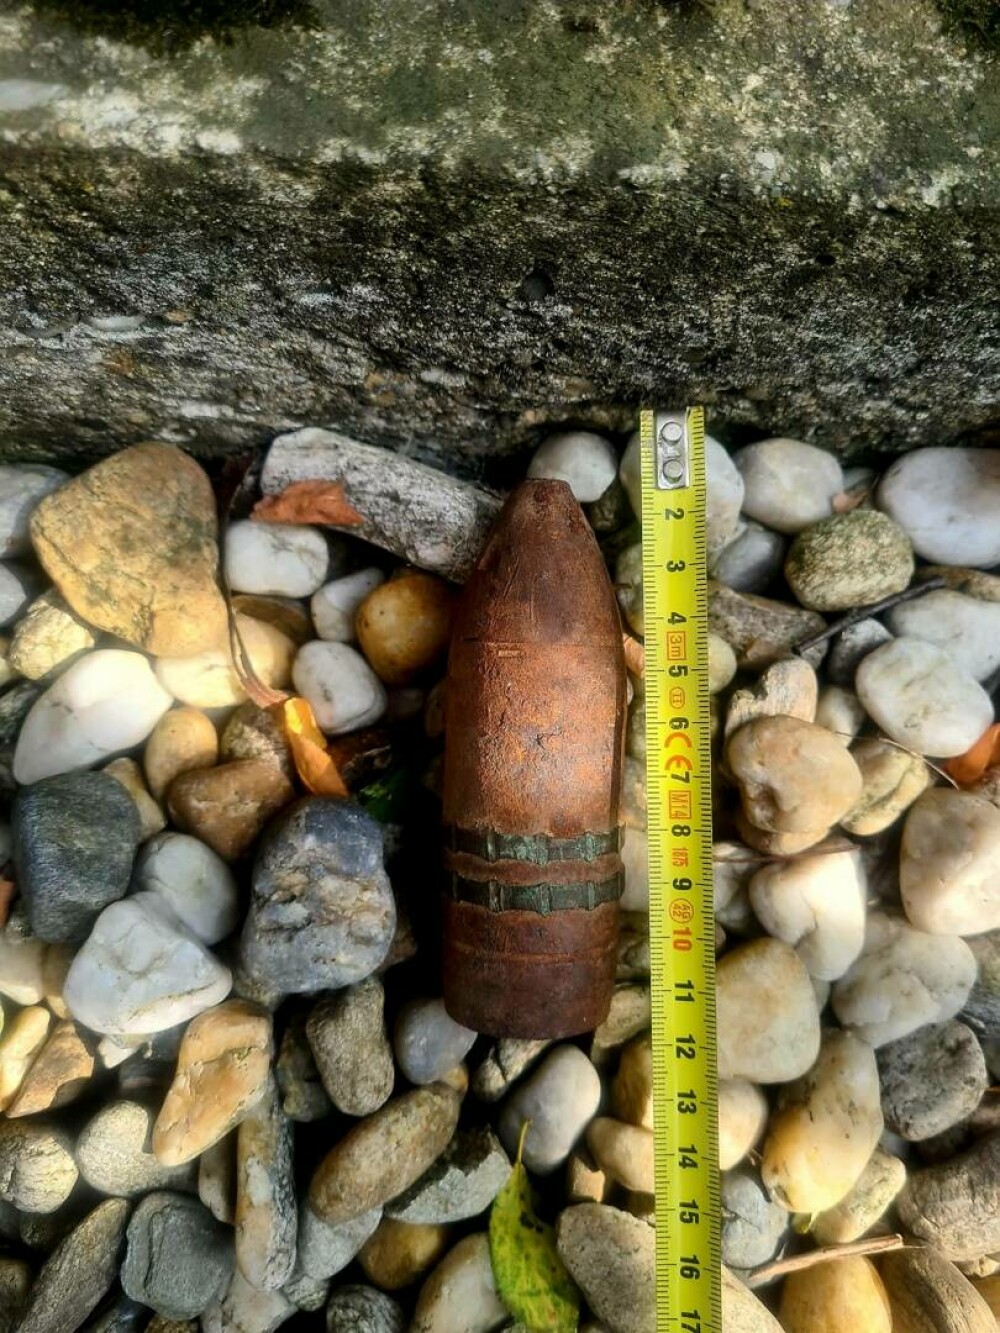 Proiectil exploziv găsit în podul unei case, în Giurgiu, de un bărbat care decoperta acoperişul. Ce au constatat specialiștii - Imaginea 1